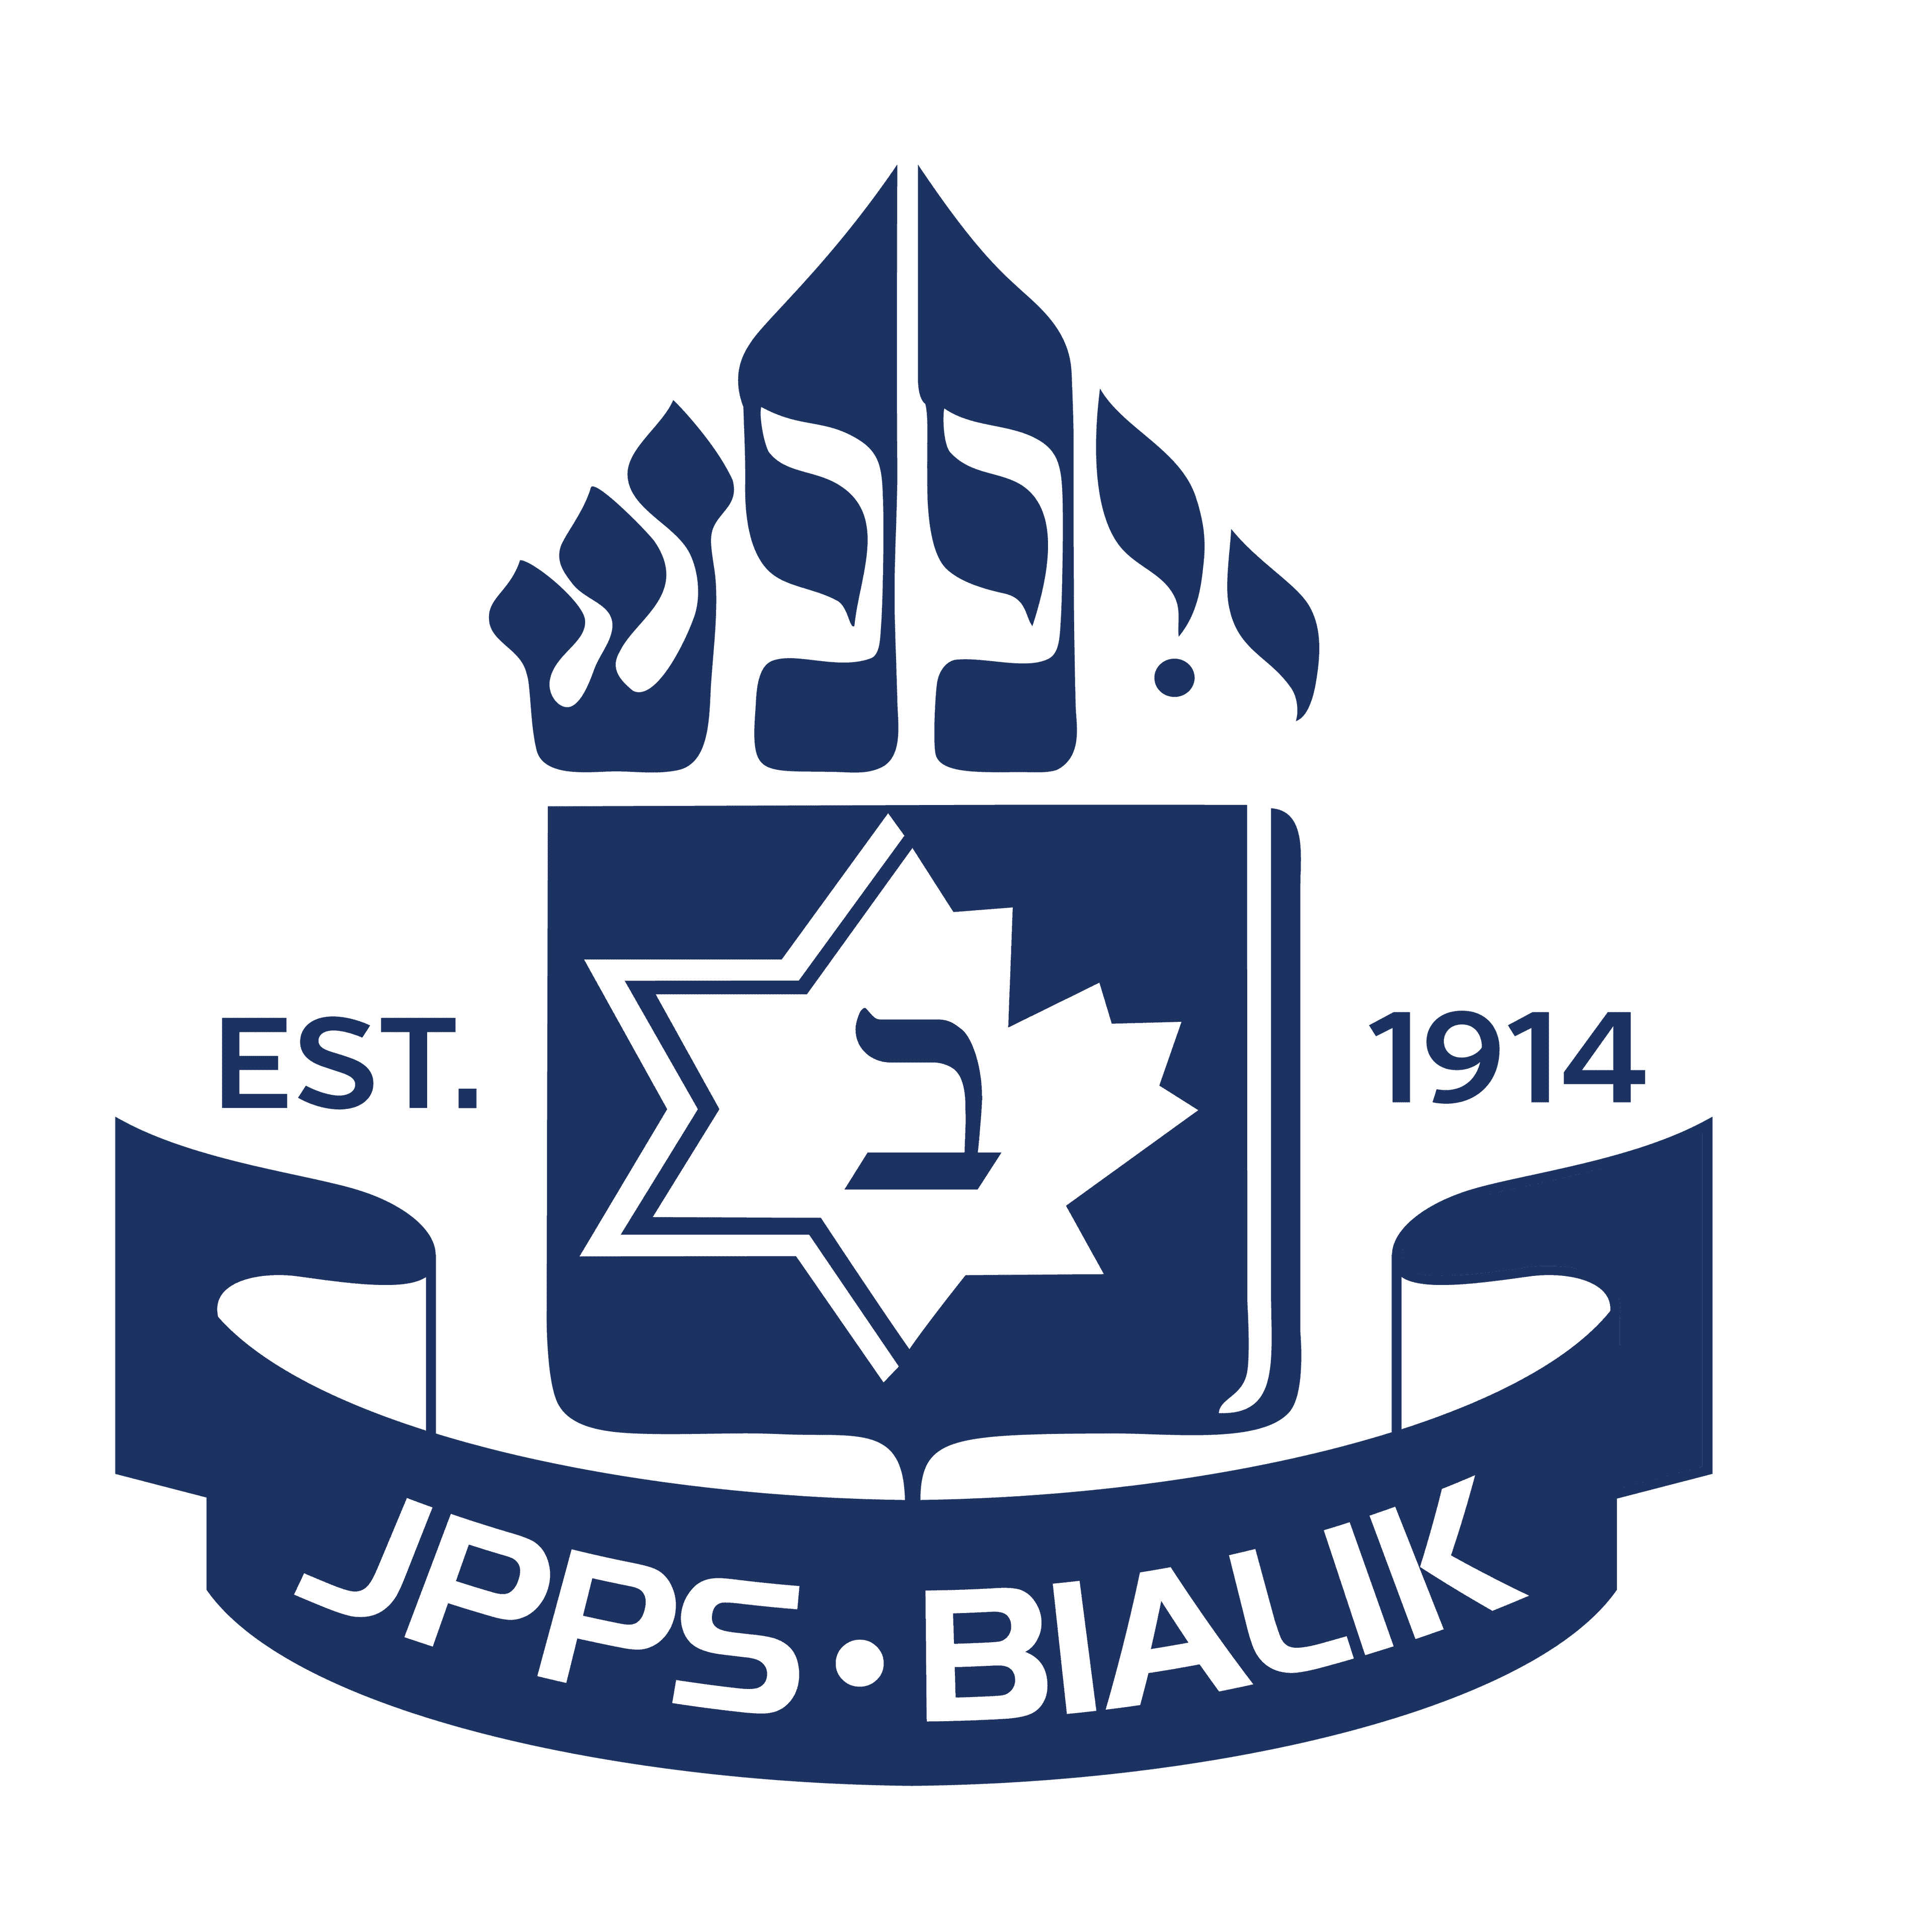 JPPS-BIALIK SCHOOLS